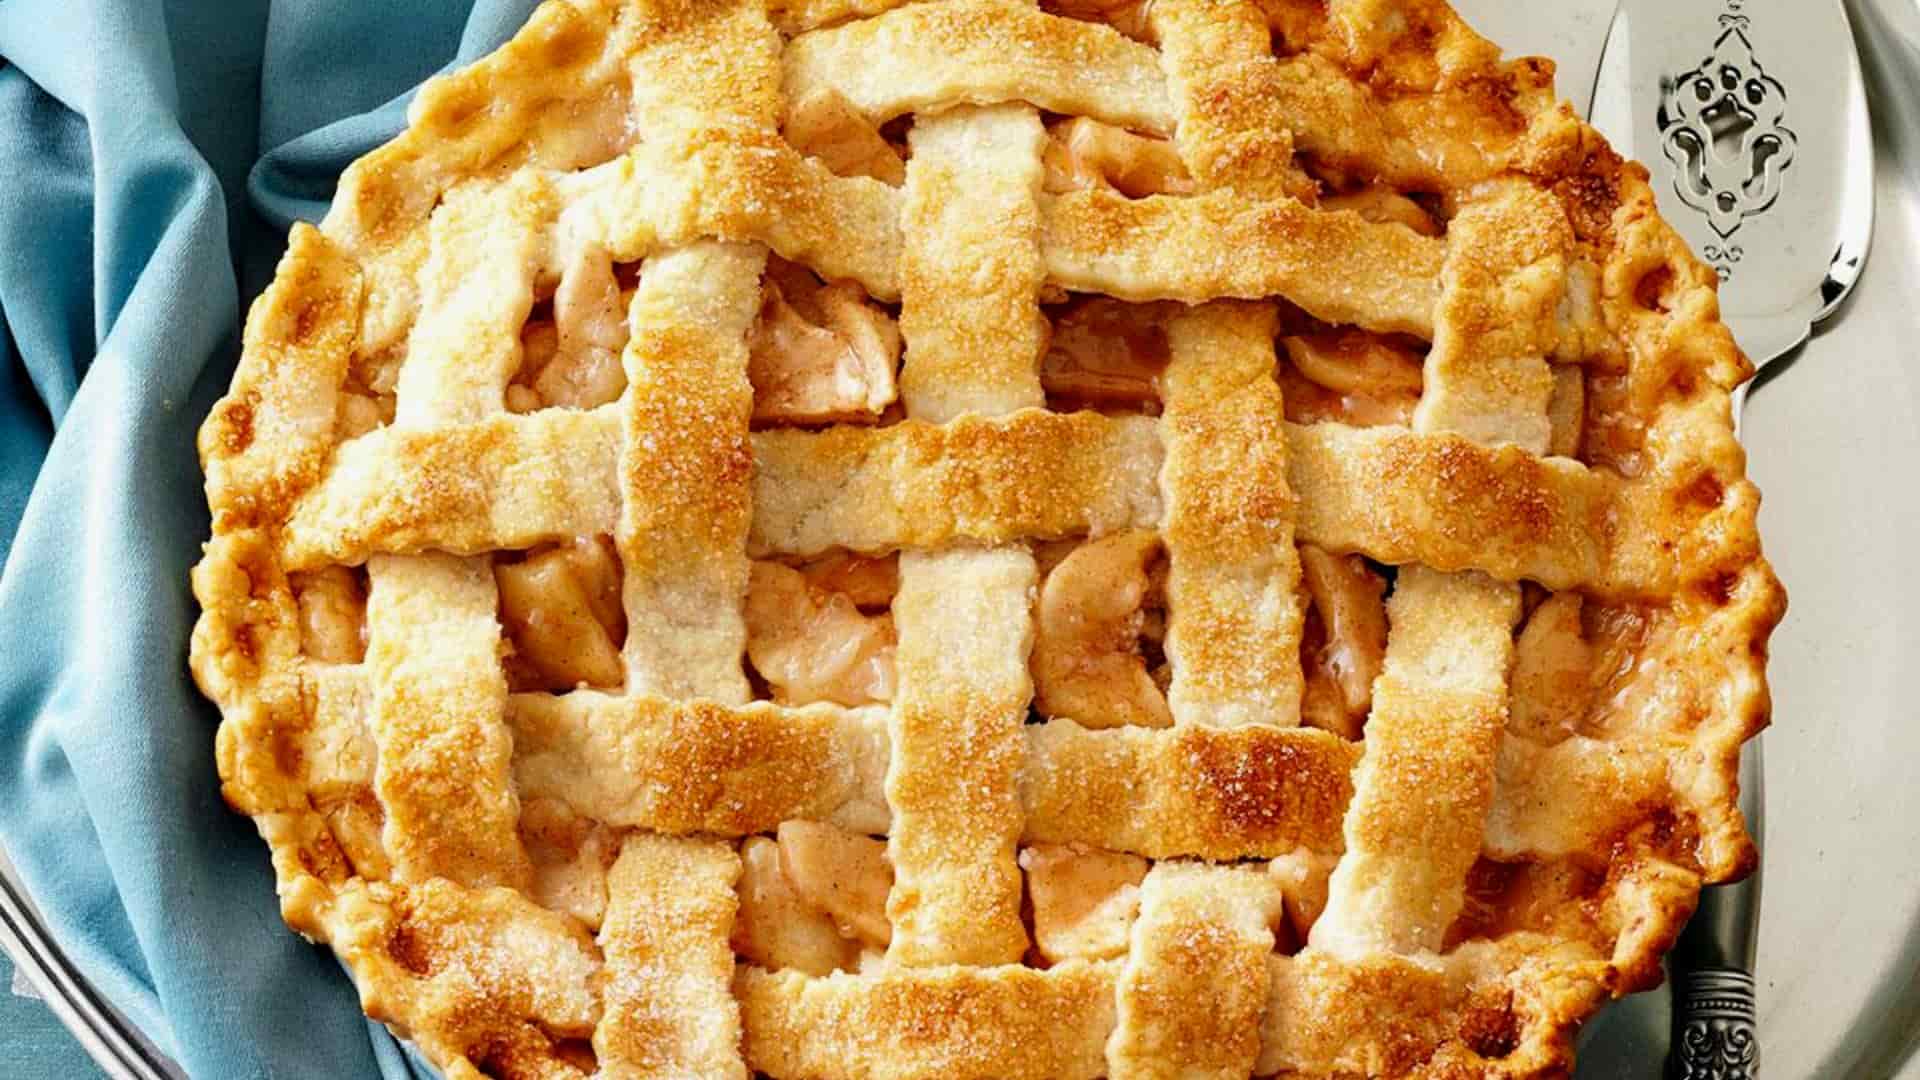 Apple pie with lattice lid